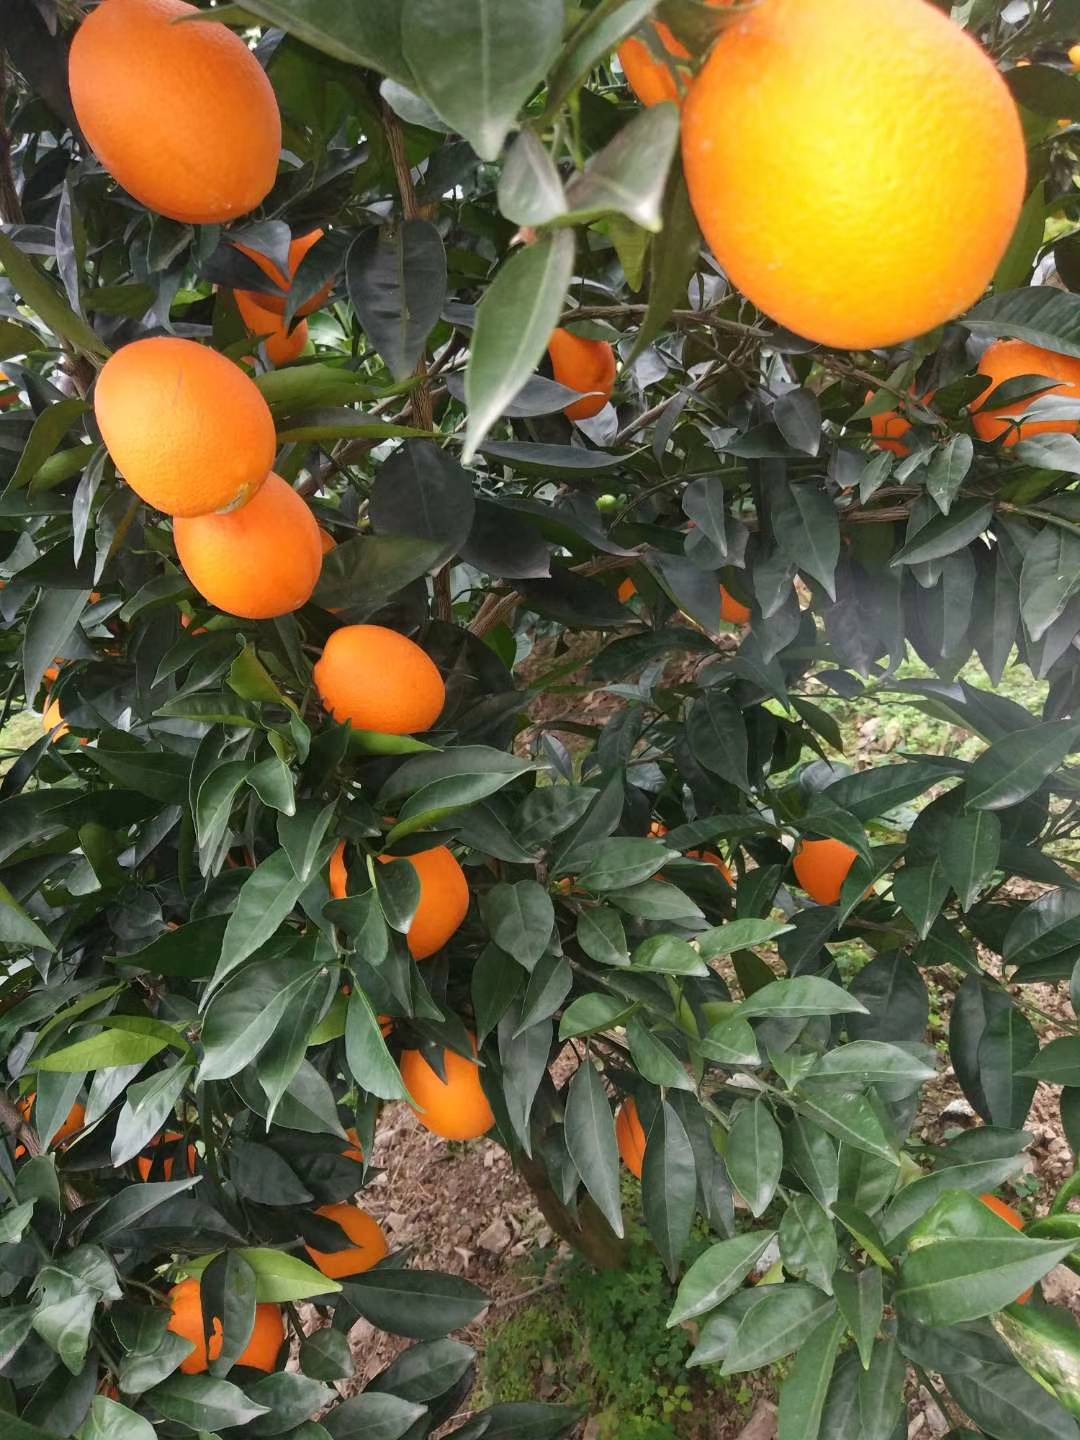 老父亲自种的奉节纽荷尔脐橙，共有几万斤，长在树上的！！！

如果您想要一手货源，没有中间商赚差价；如果您刚好需要采购没有浸泡任何药水和打蜡的“安全”橙；如果